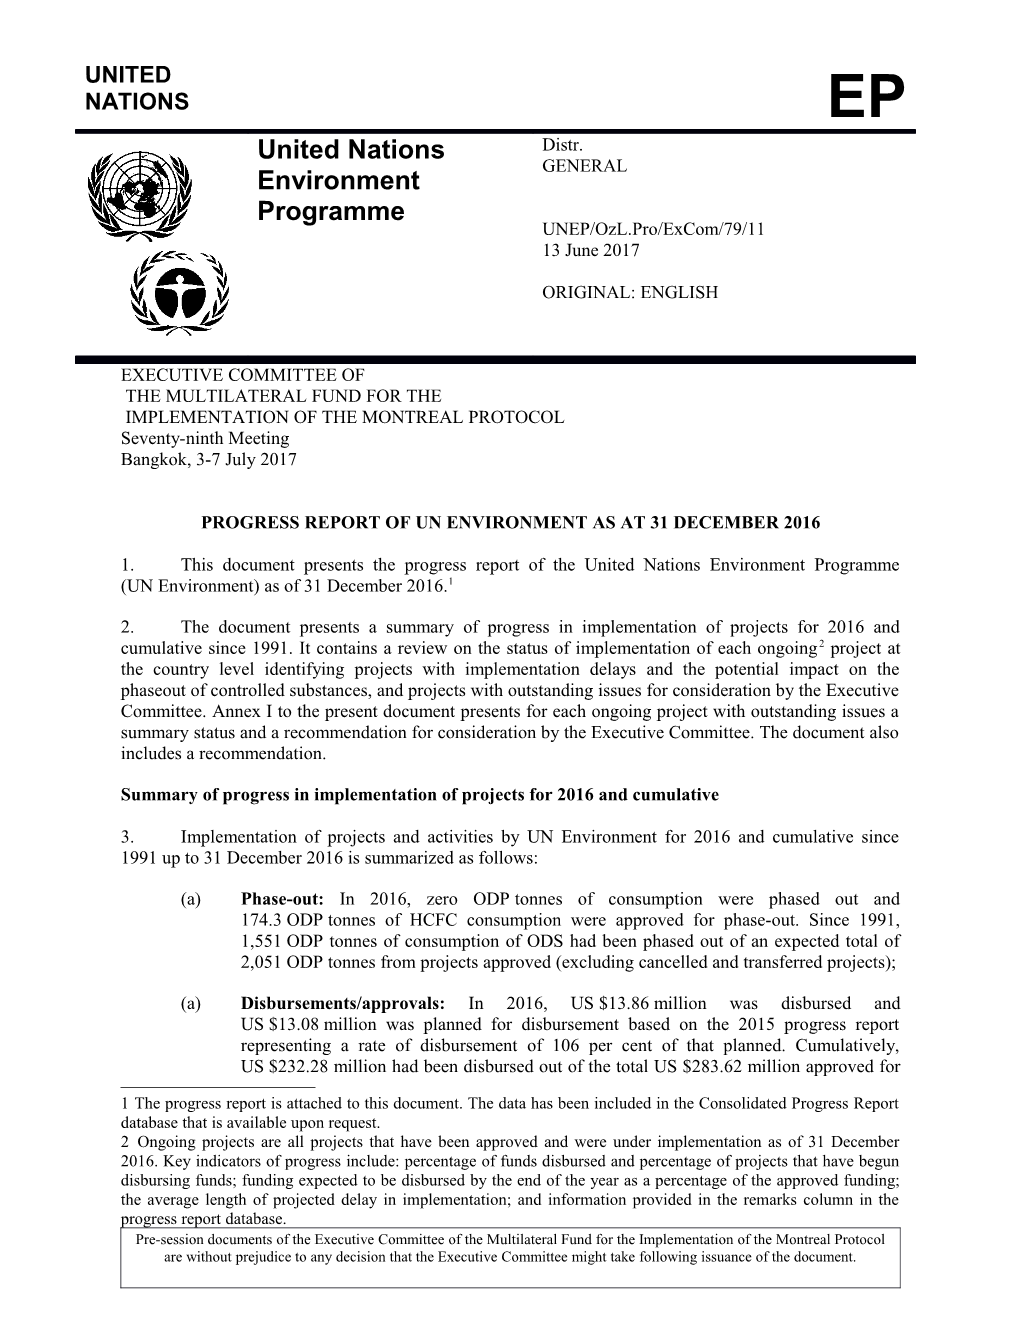 Progress Report of UN Environment As at 31 December 2016 (Part I)